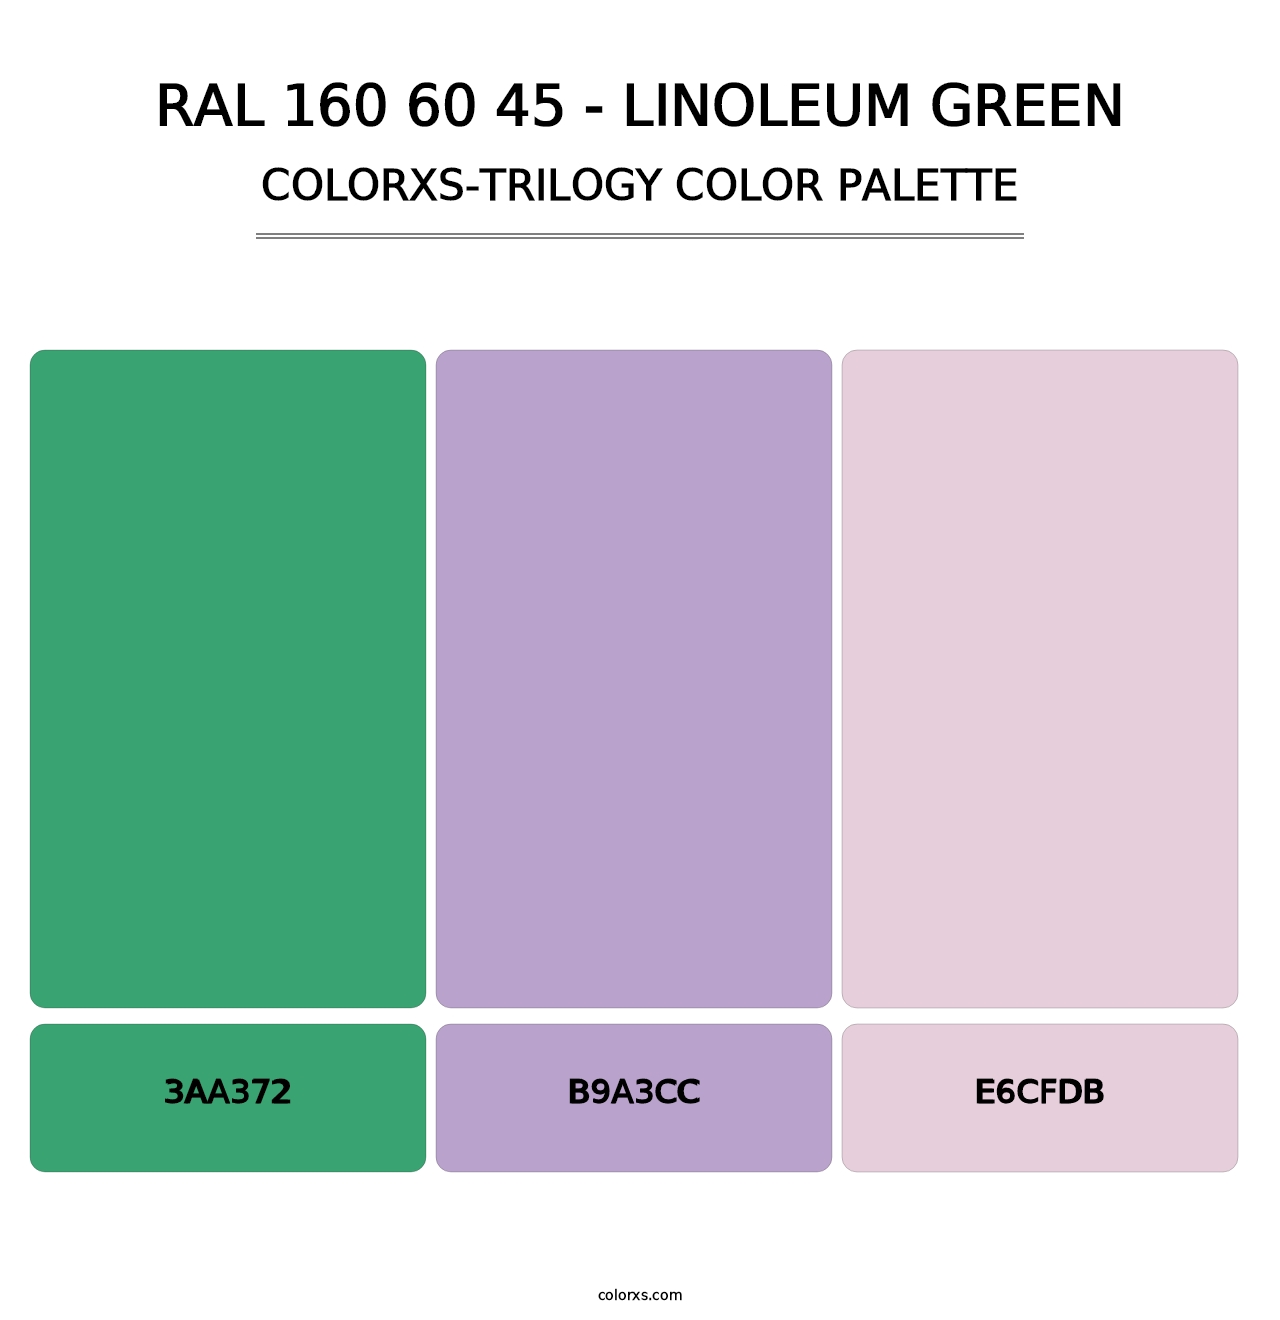 RAL 160 60 45 - Linoleum Green - Colorxs Trilogy Palette